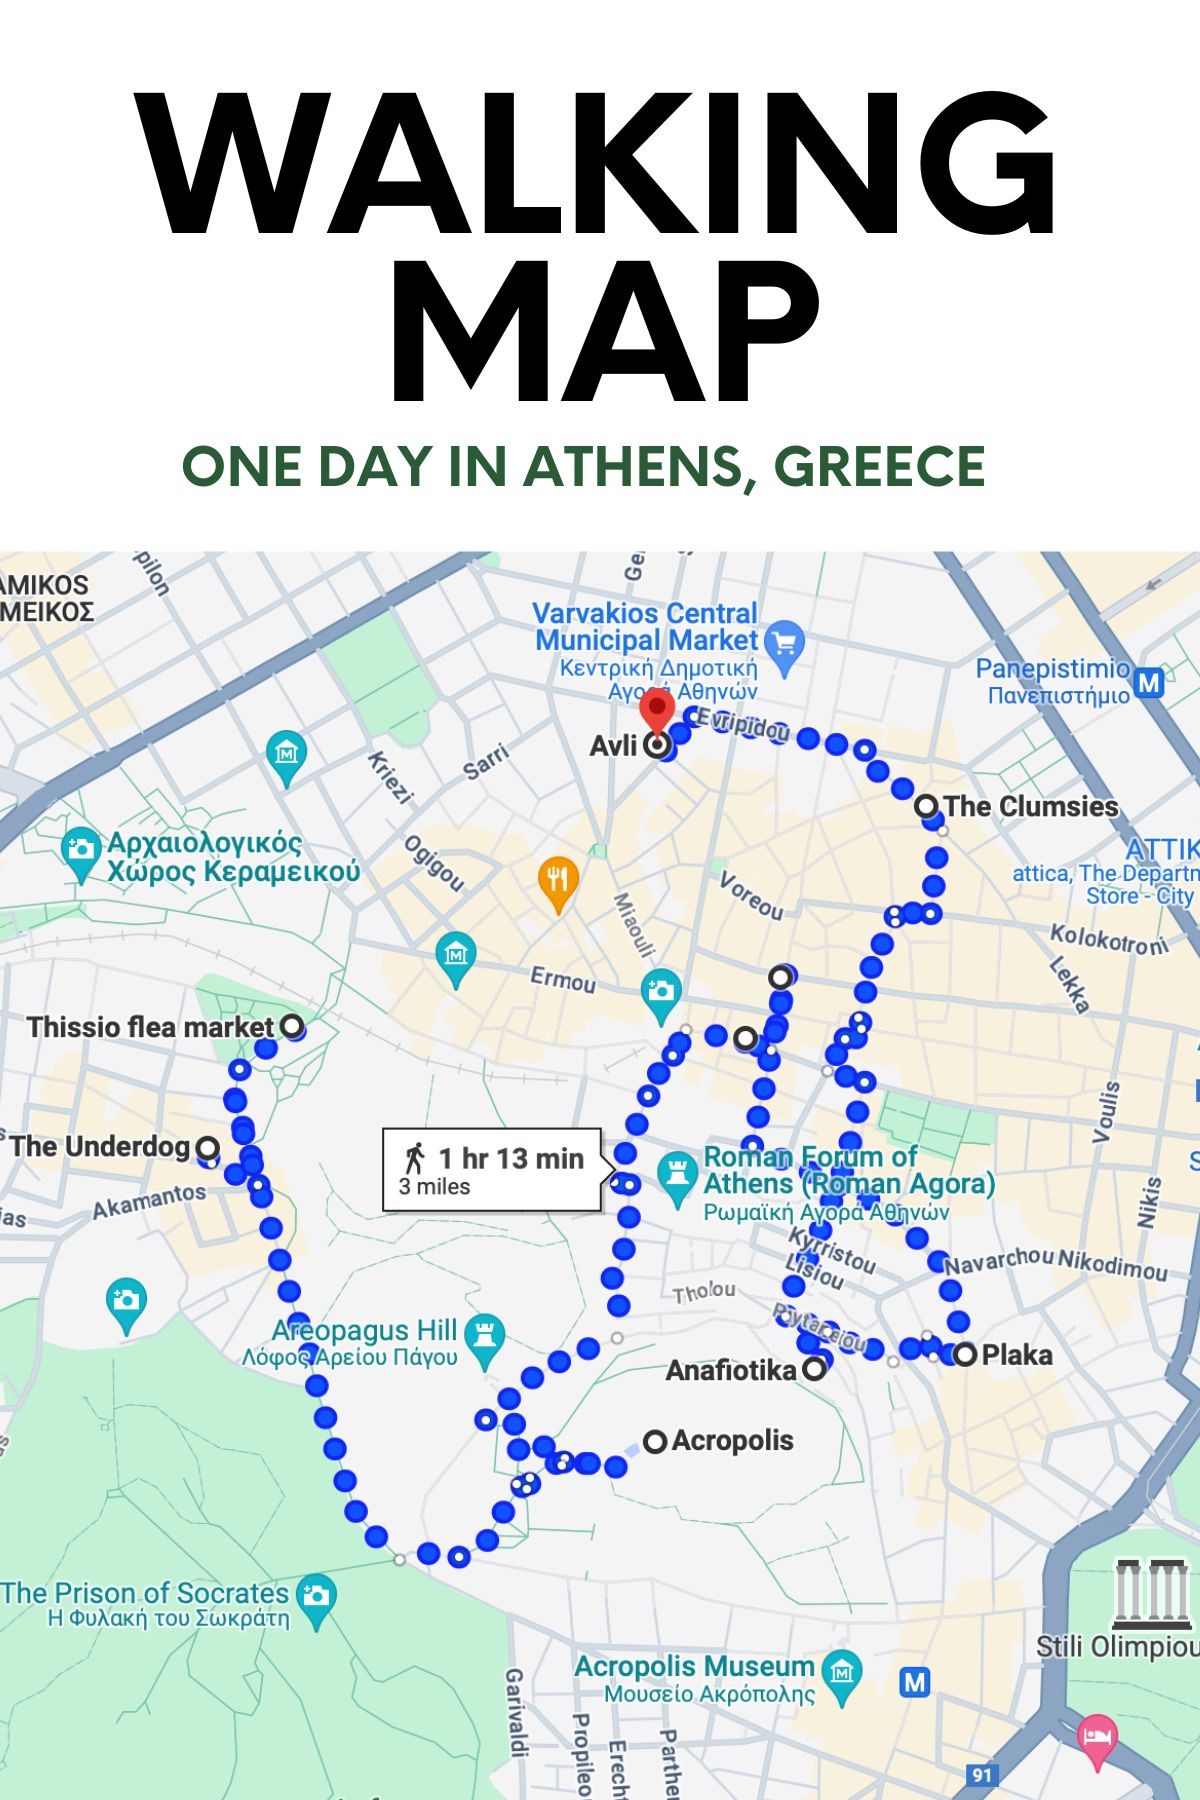 Walking map of Athens, Greece.